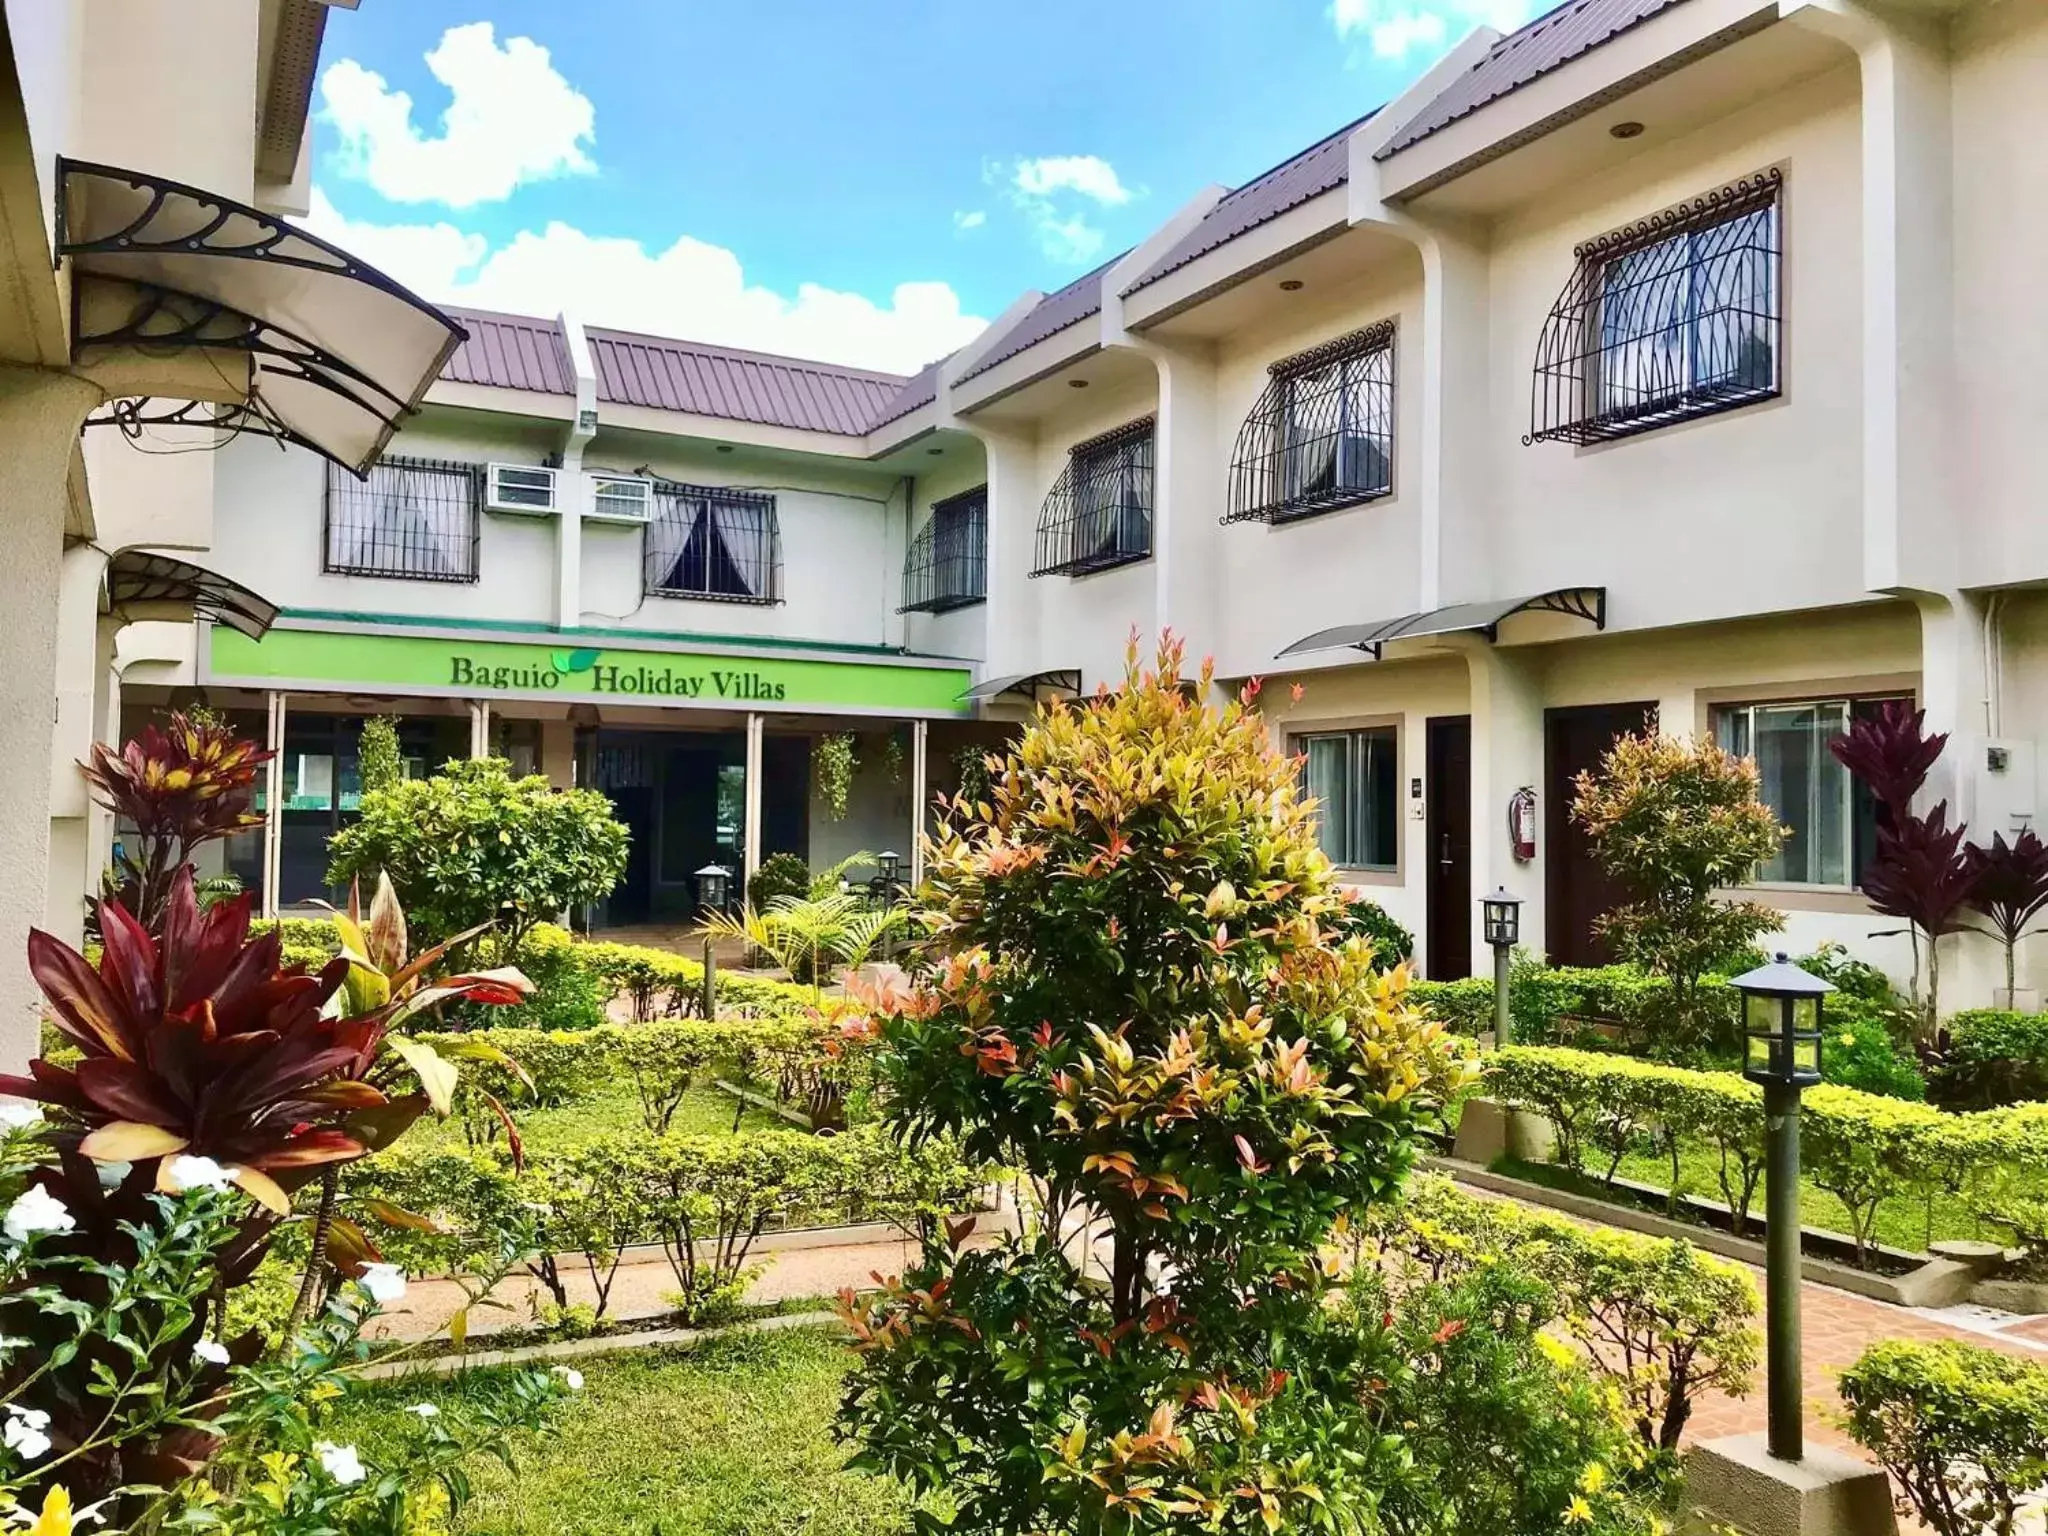 Property Building in Baguio Holiday Villas